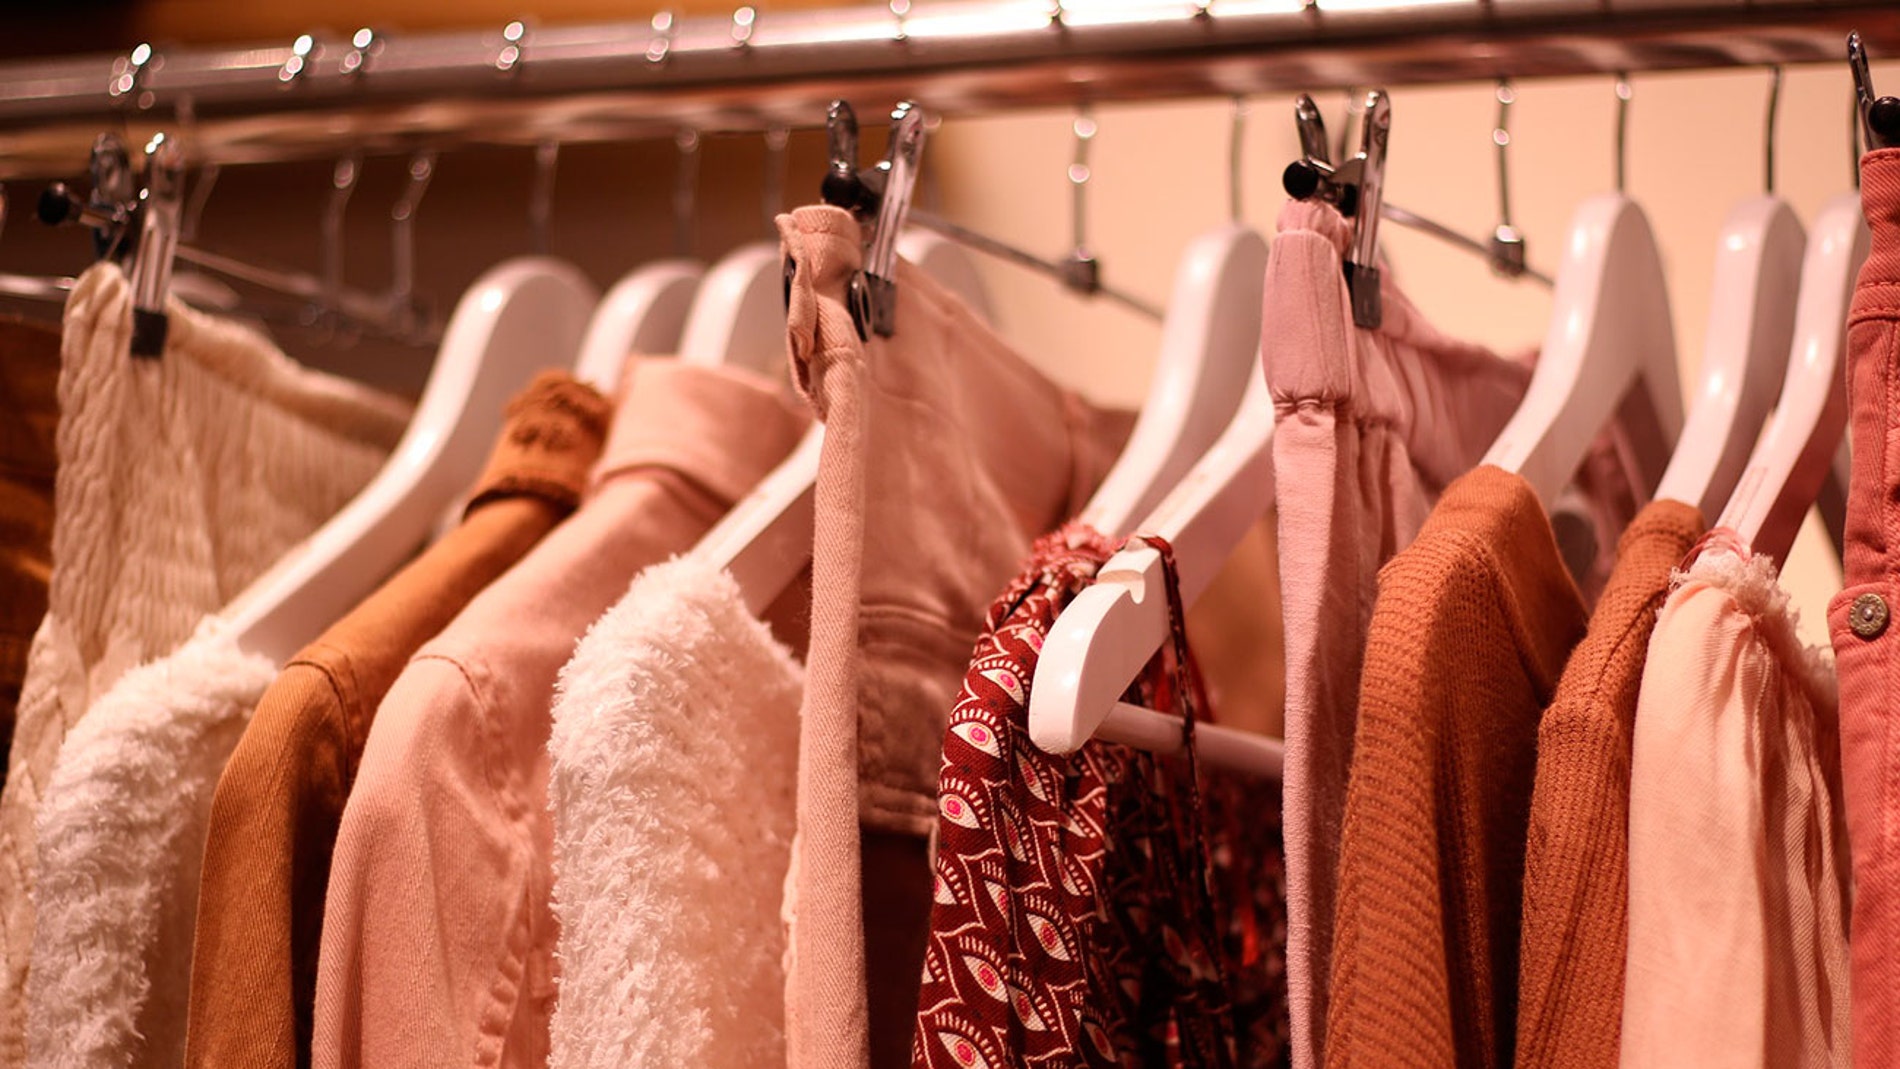 El Shazam de la ropa: Amazon lanza función para encontrar prendas te gusten con una simple foto